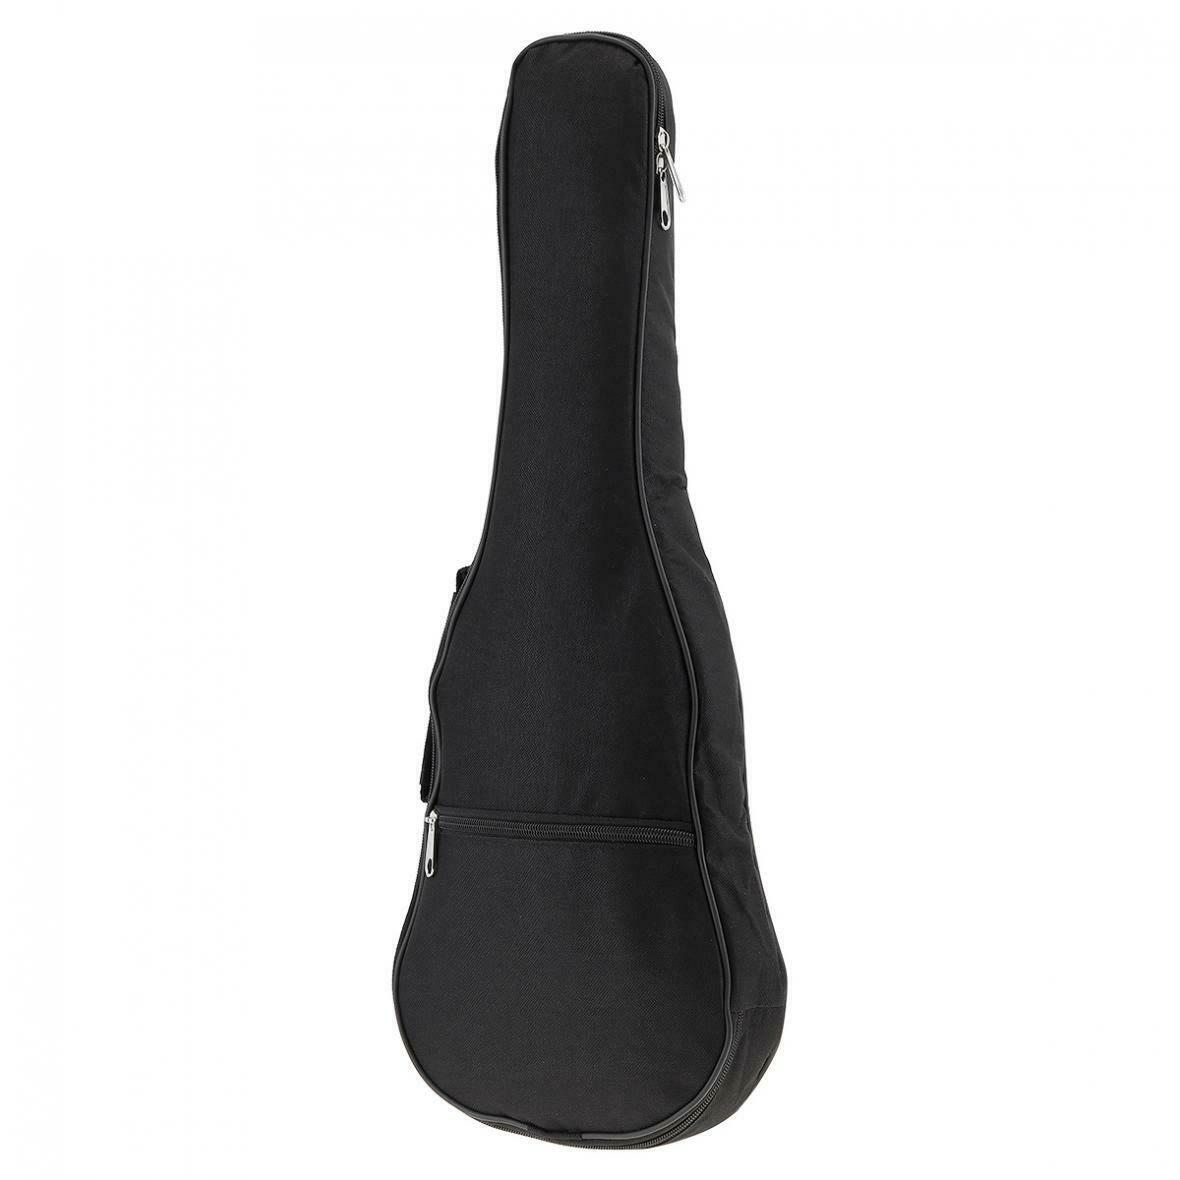 21'' Ukulele Bag Portable Cotton Sponge Soft Case Gig Bag Hawaii Guitar Backpack